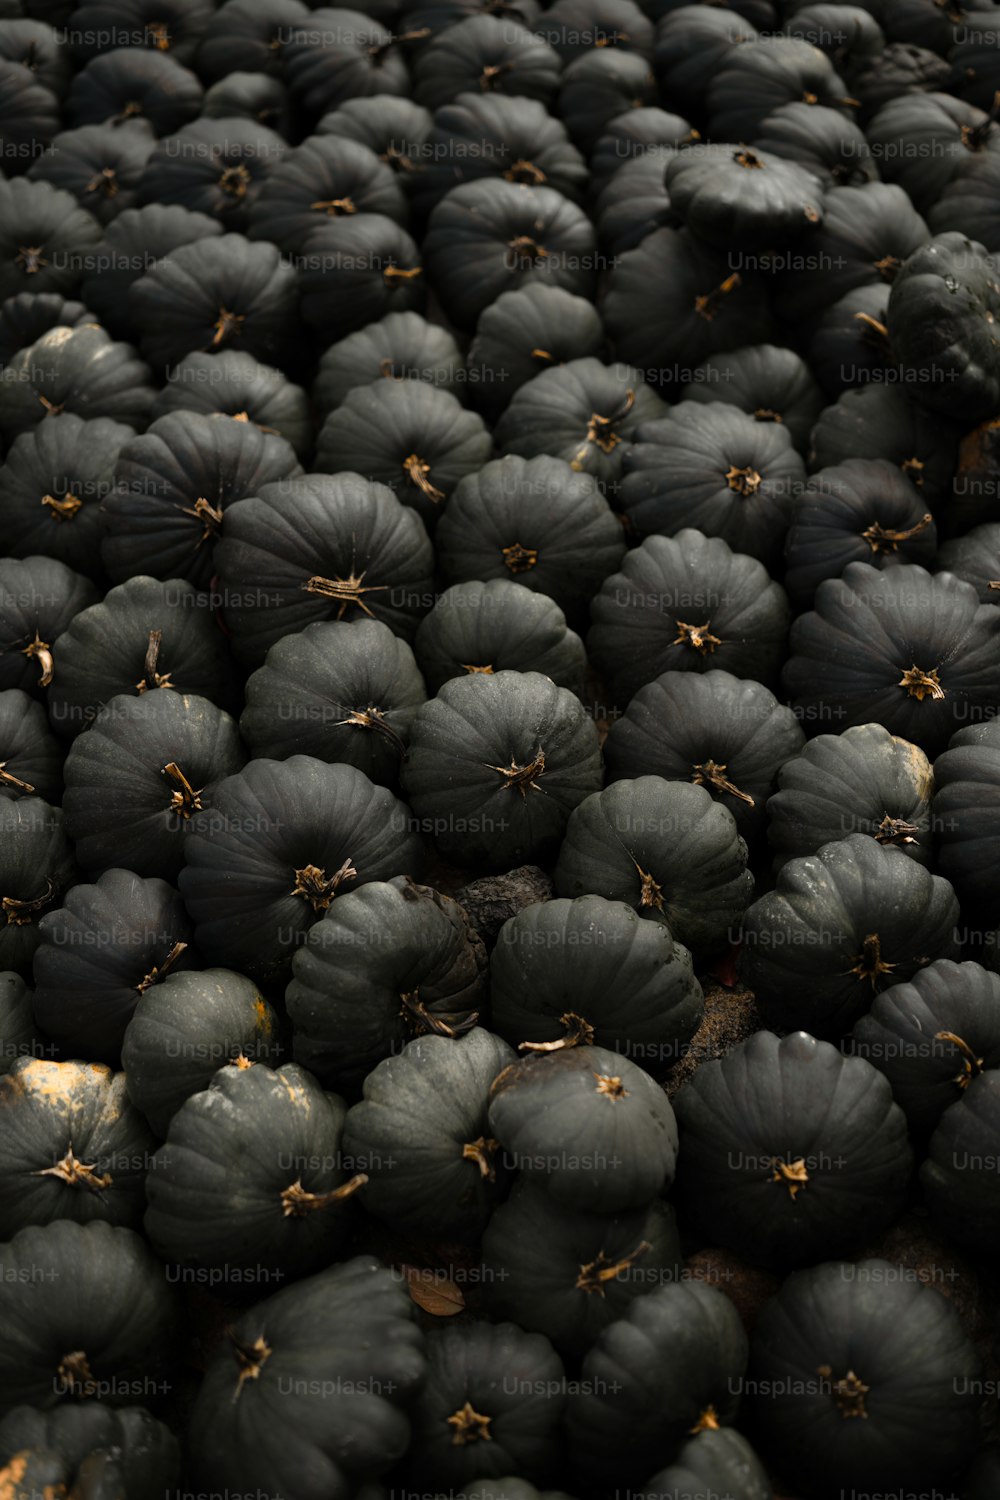 eine große Gruppe von schwarzen Früchten, die übereinander sitzen